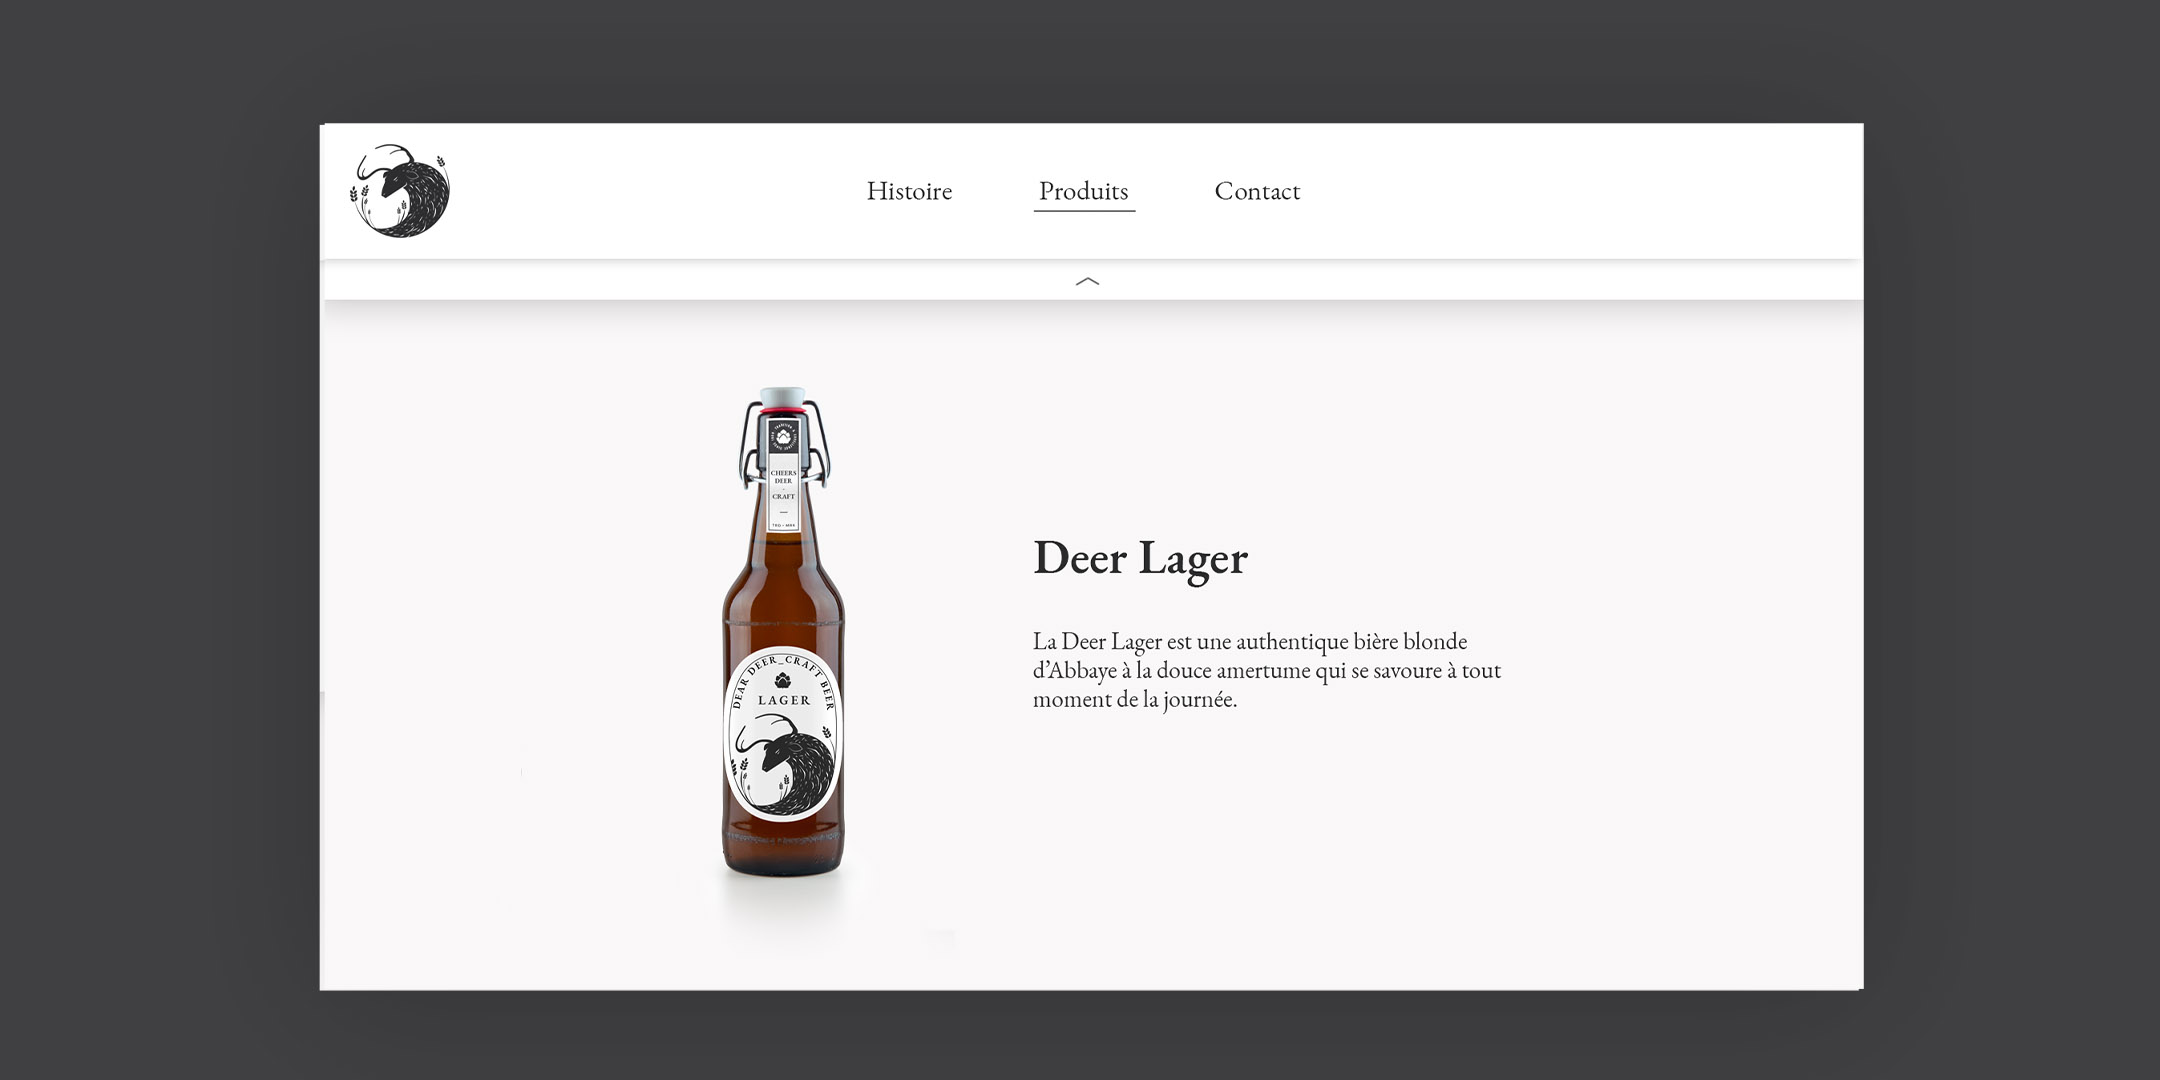 Maquette de la page d'une des bières de Dear Deer. La bouteille de bière lager sur fond blanc, avec sur sa droite le nom de la bière et une description de son goût.